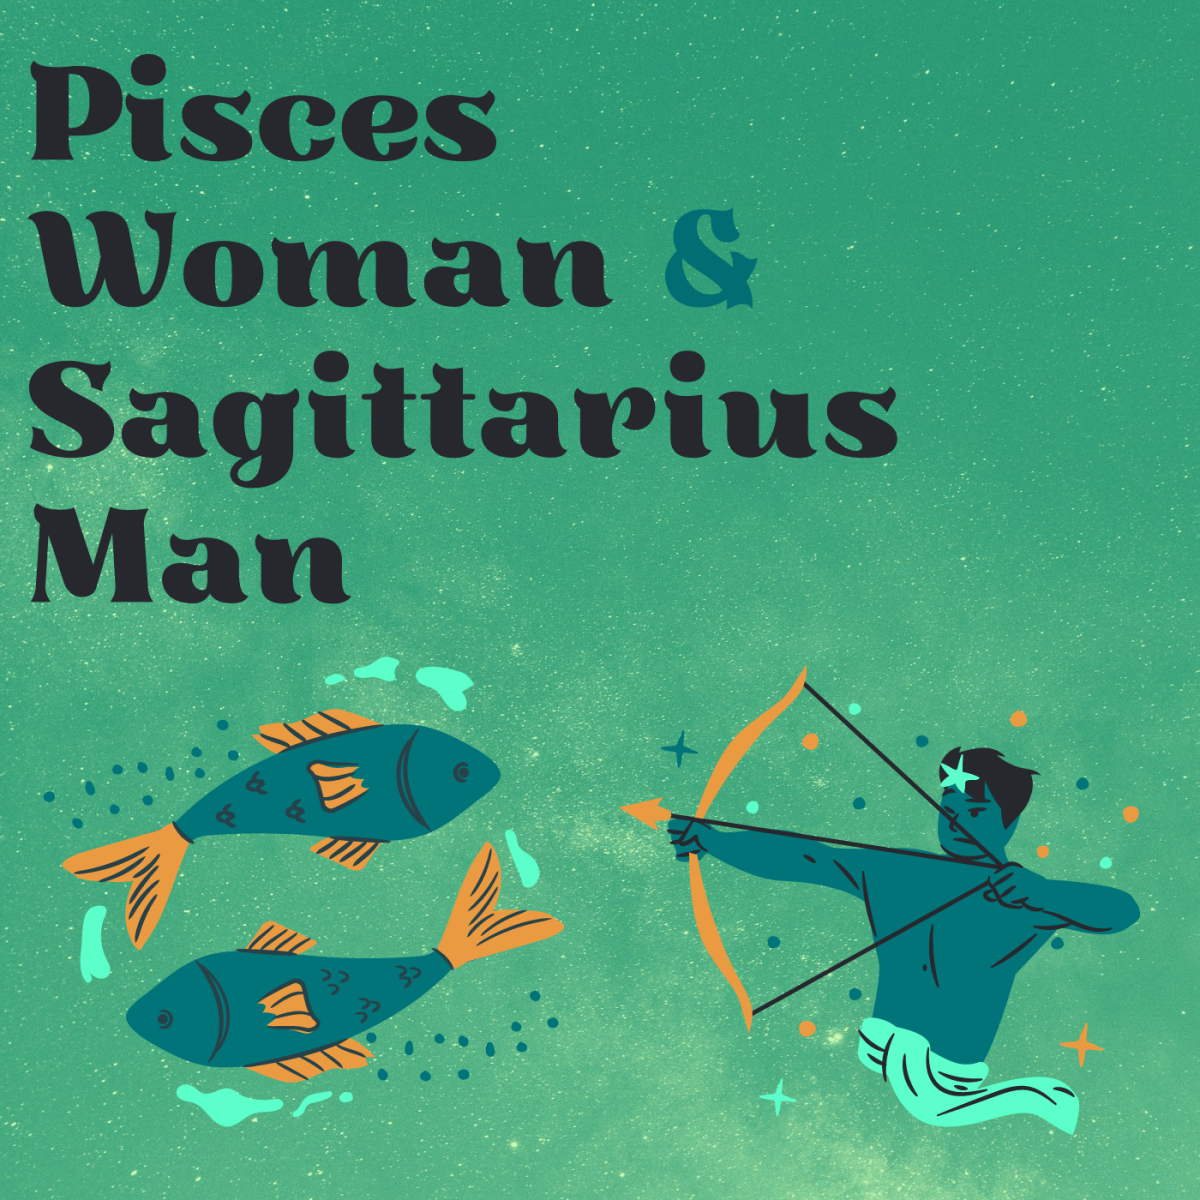 Sagittarius Man and Pisces Woman